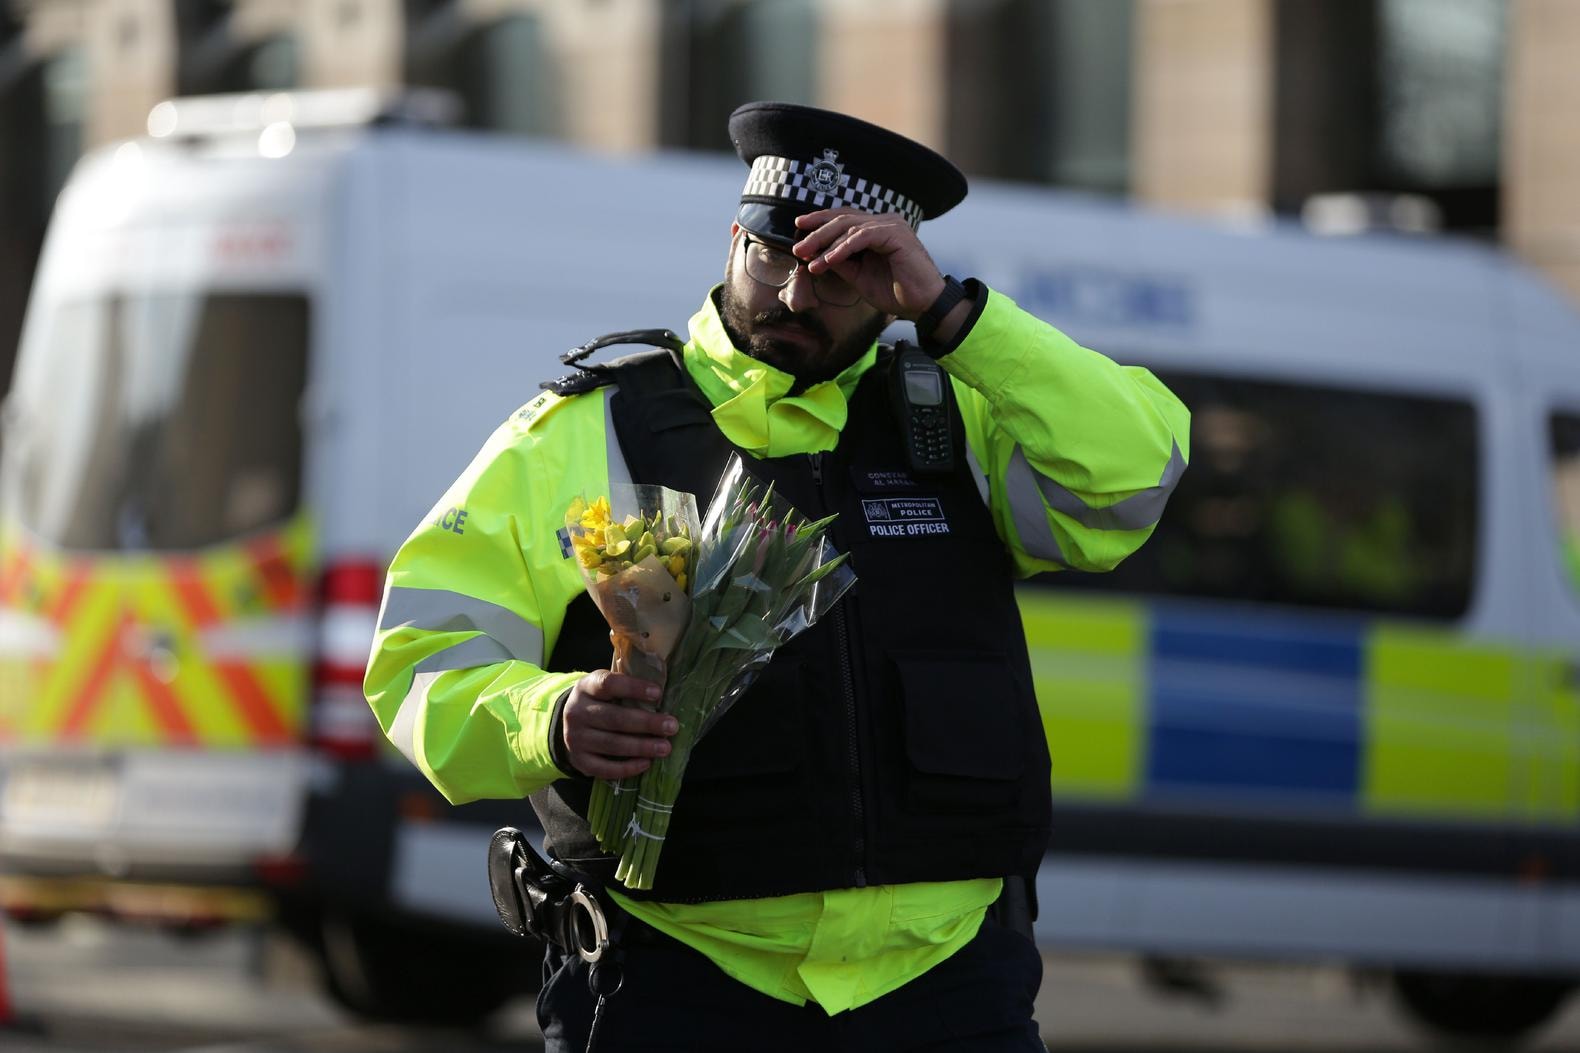 Vrouw die in Theems belandde na aanslag Londen overleden